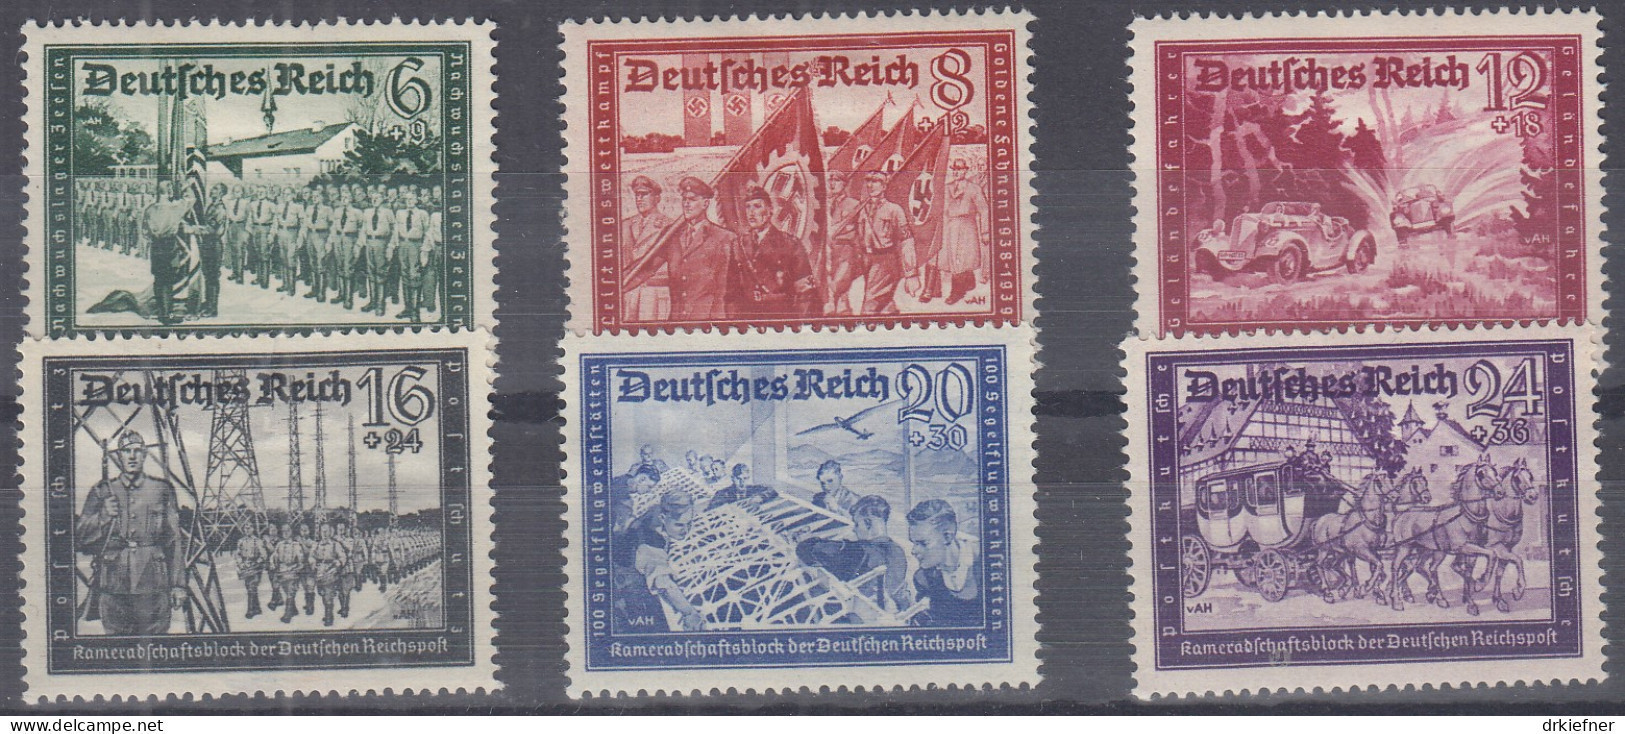 DR 773-778, Ungebraucht *, Kameradschaftsblock Der Deutschen Reichspost, 1941 - Ongebruikt